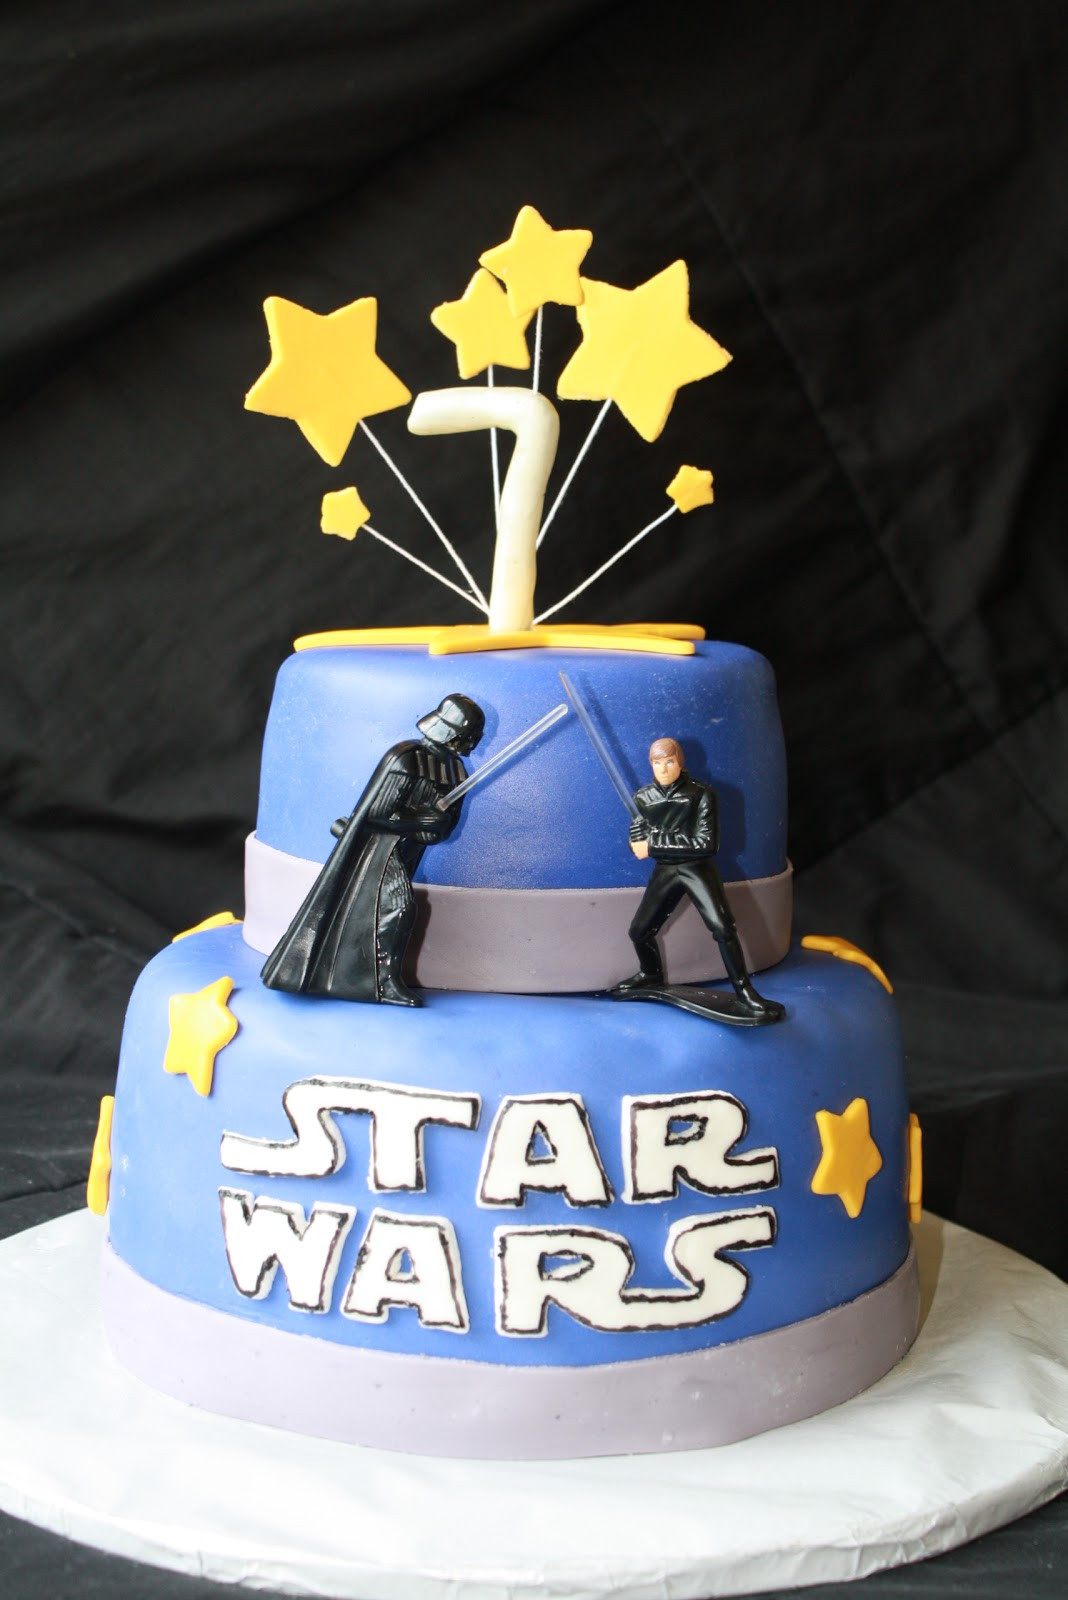 Star Wars Birthday Cake Decorations
 Star Wars Birthday Cake Durable Chocolate Cake Recipe